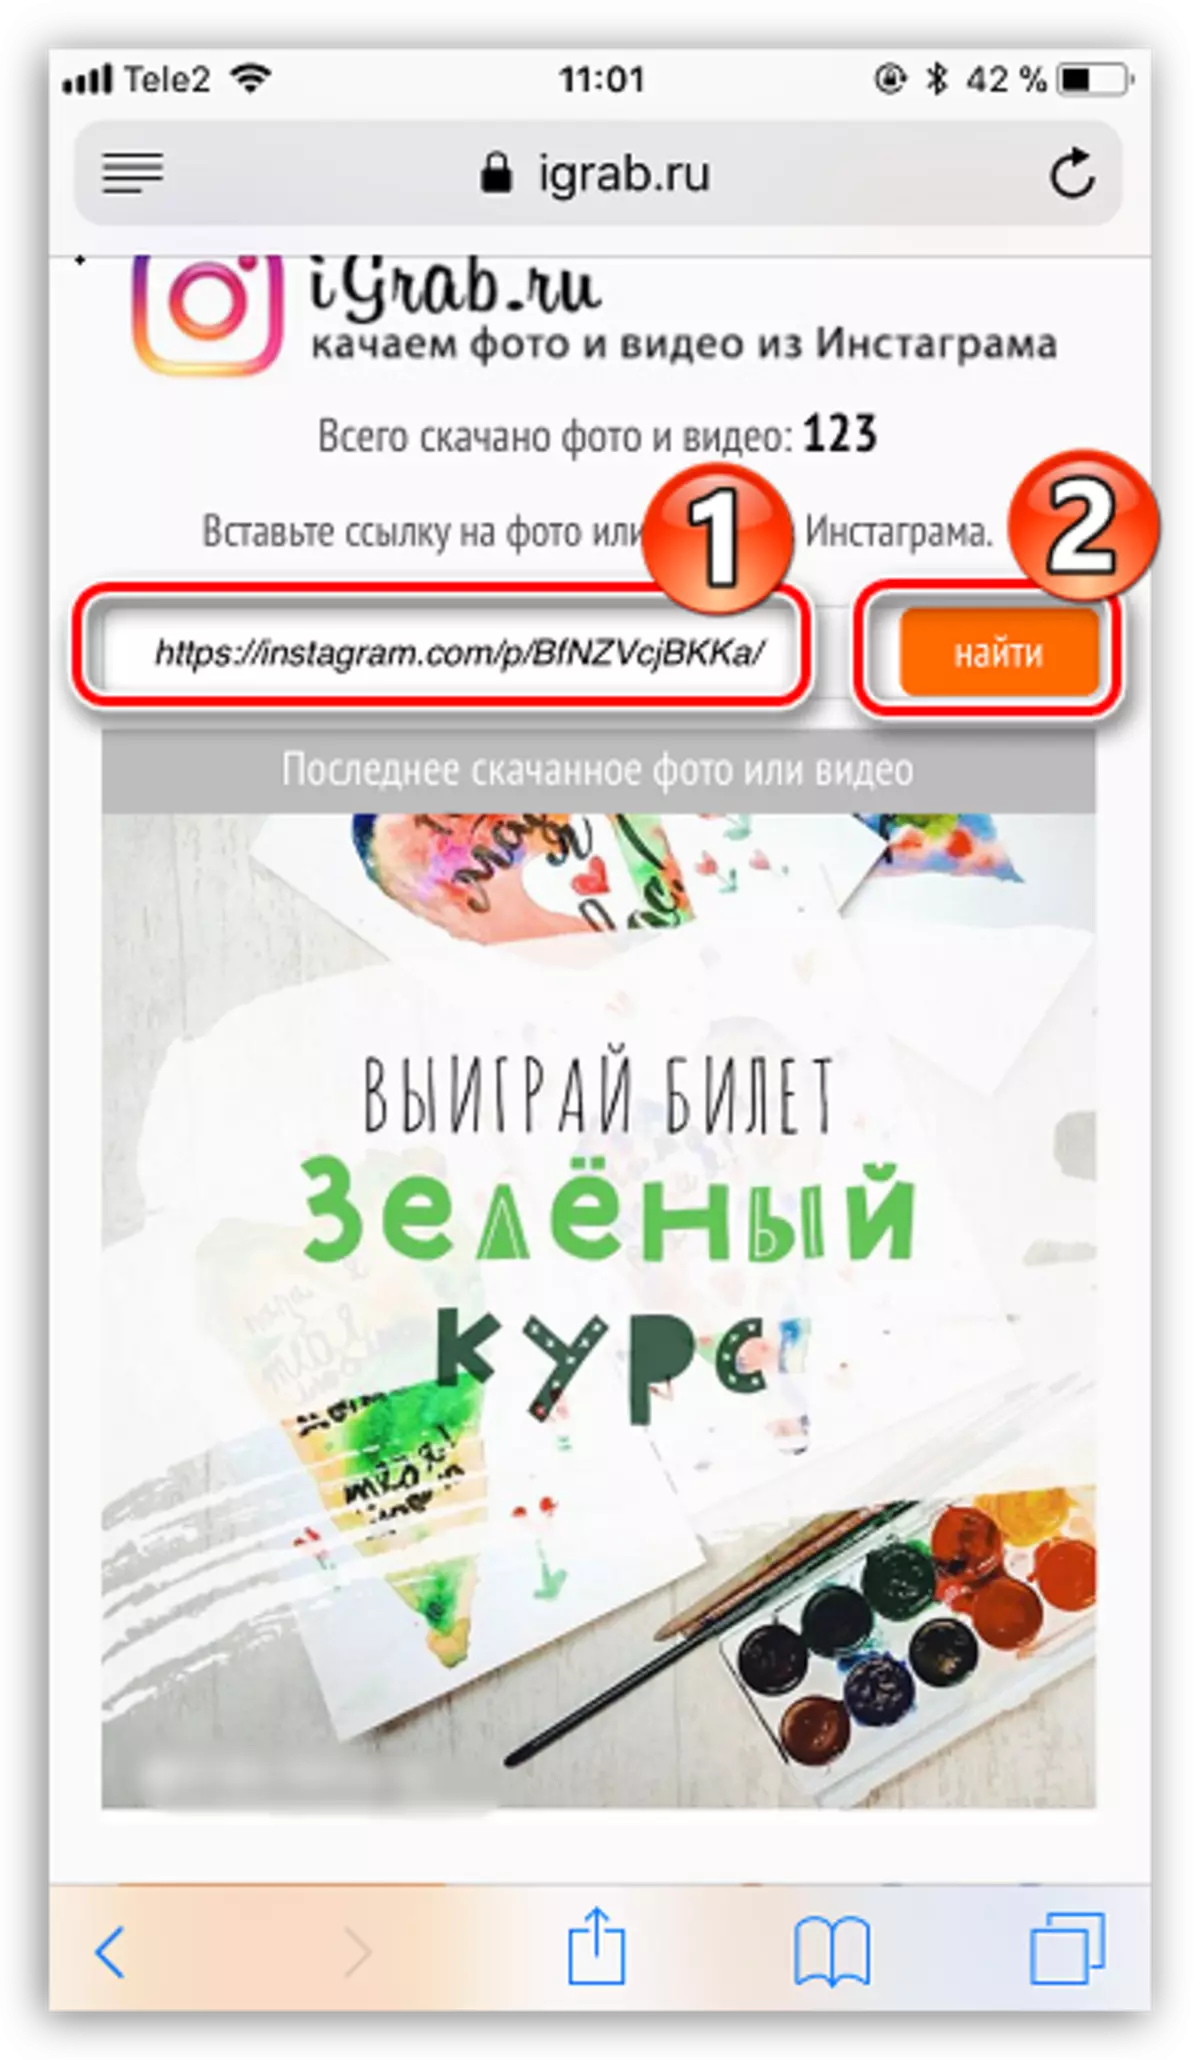 Kërko video në faqen e internetit të igrab.ru